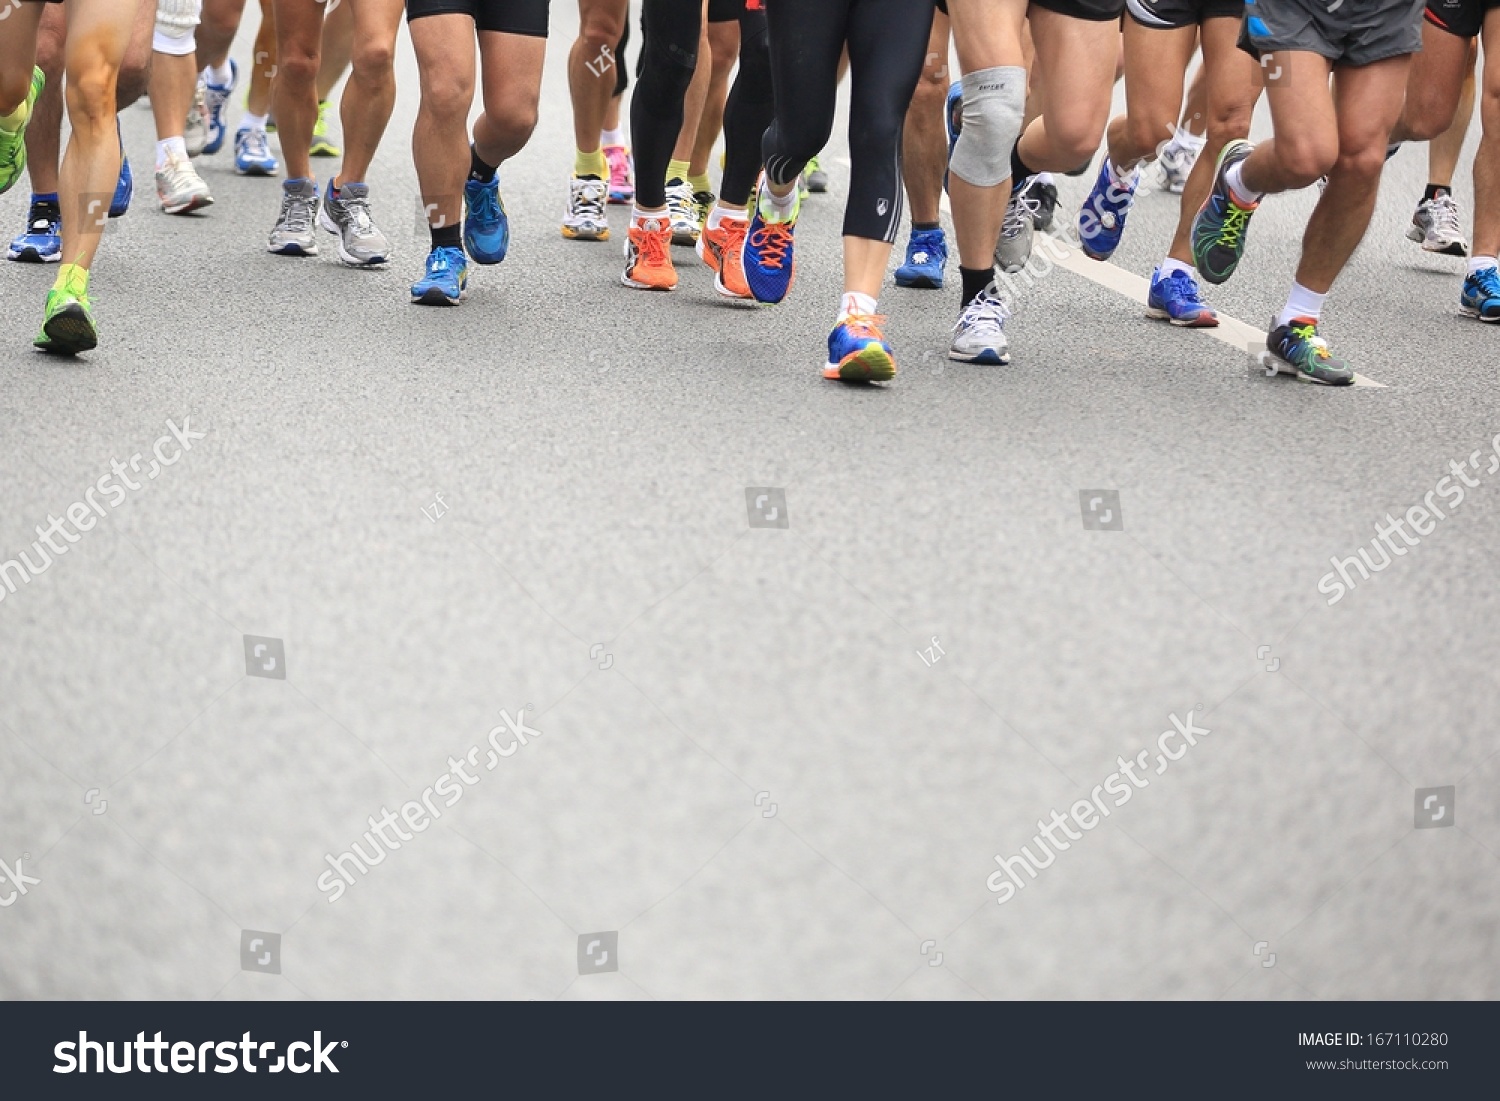 SHENZHEN - DEC 08: Unidentified athletes running at the shenzhen international marathon 2013, shennan road,shenzhen city,China,on DEC 08,2013 at Shenzhen city,Guangdong province,China.  #167110280